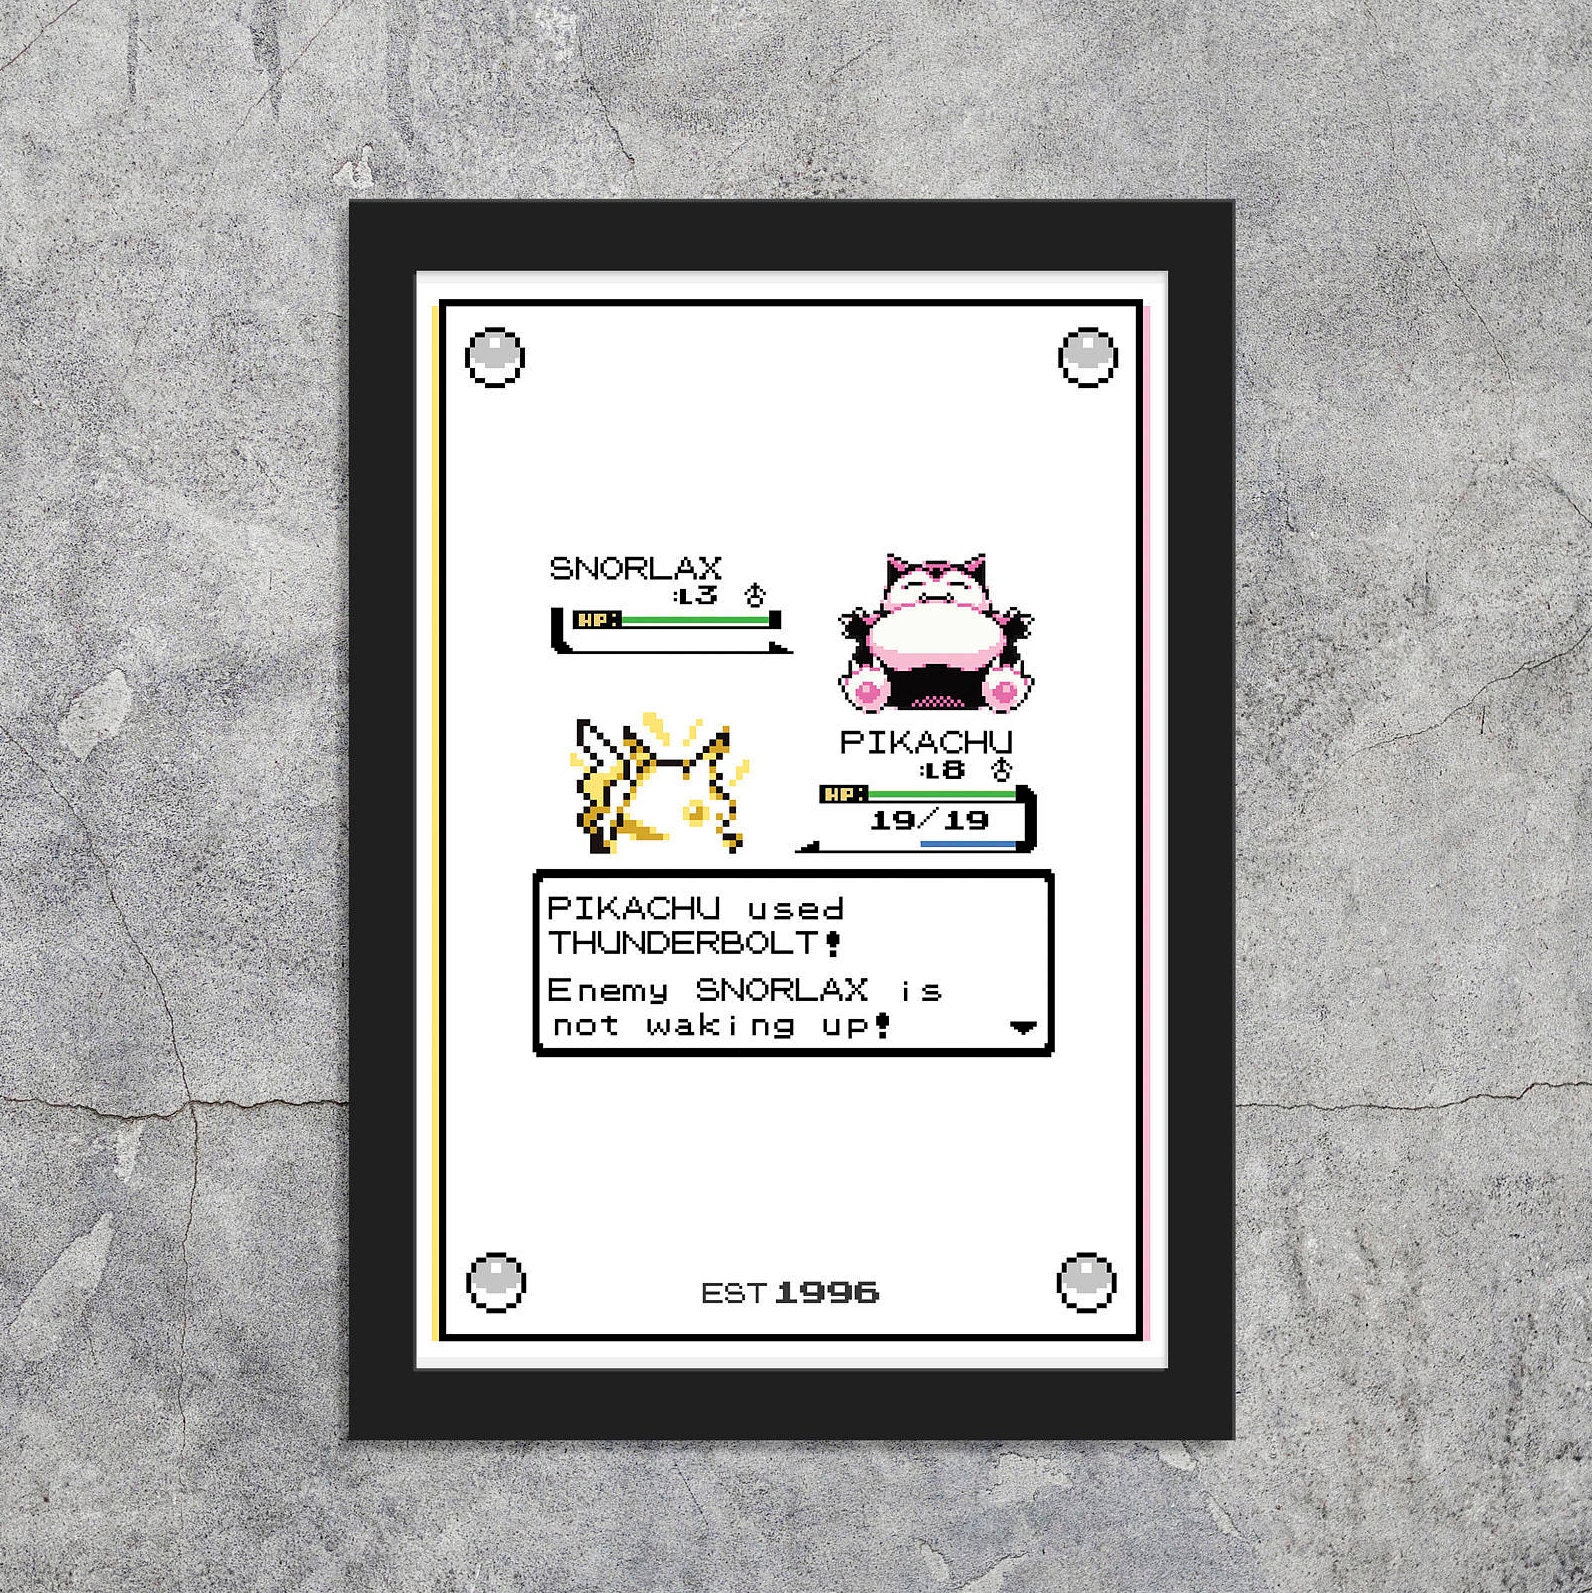 Affiche encadrée personnalisable - Thème Pokémon – OzeCréations